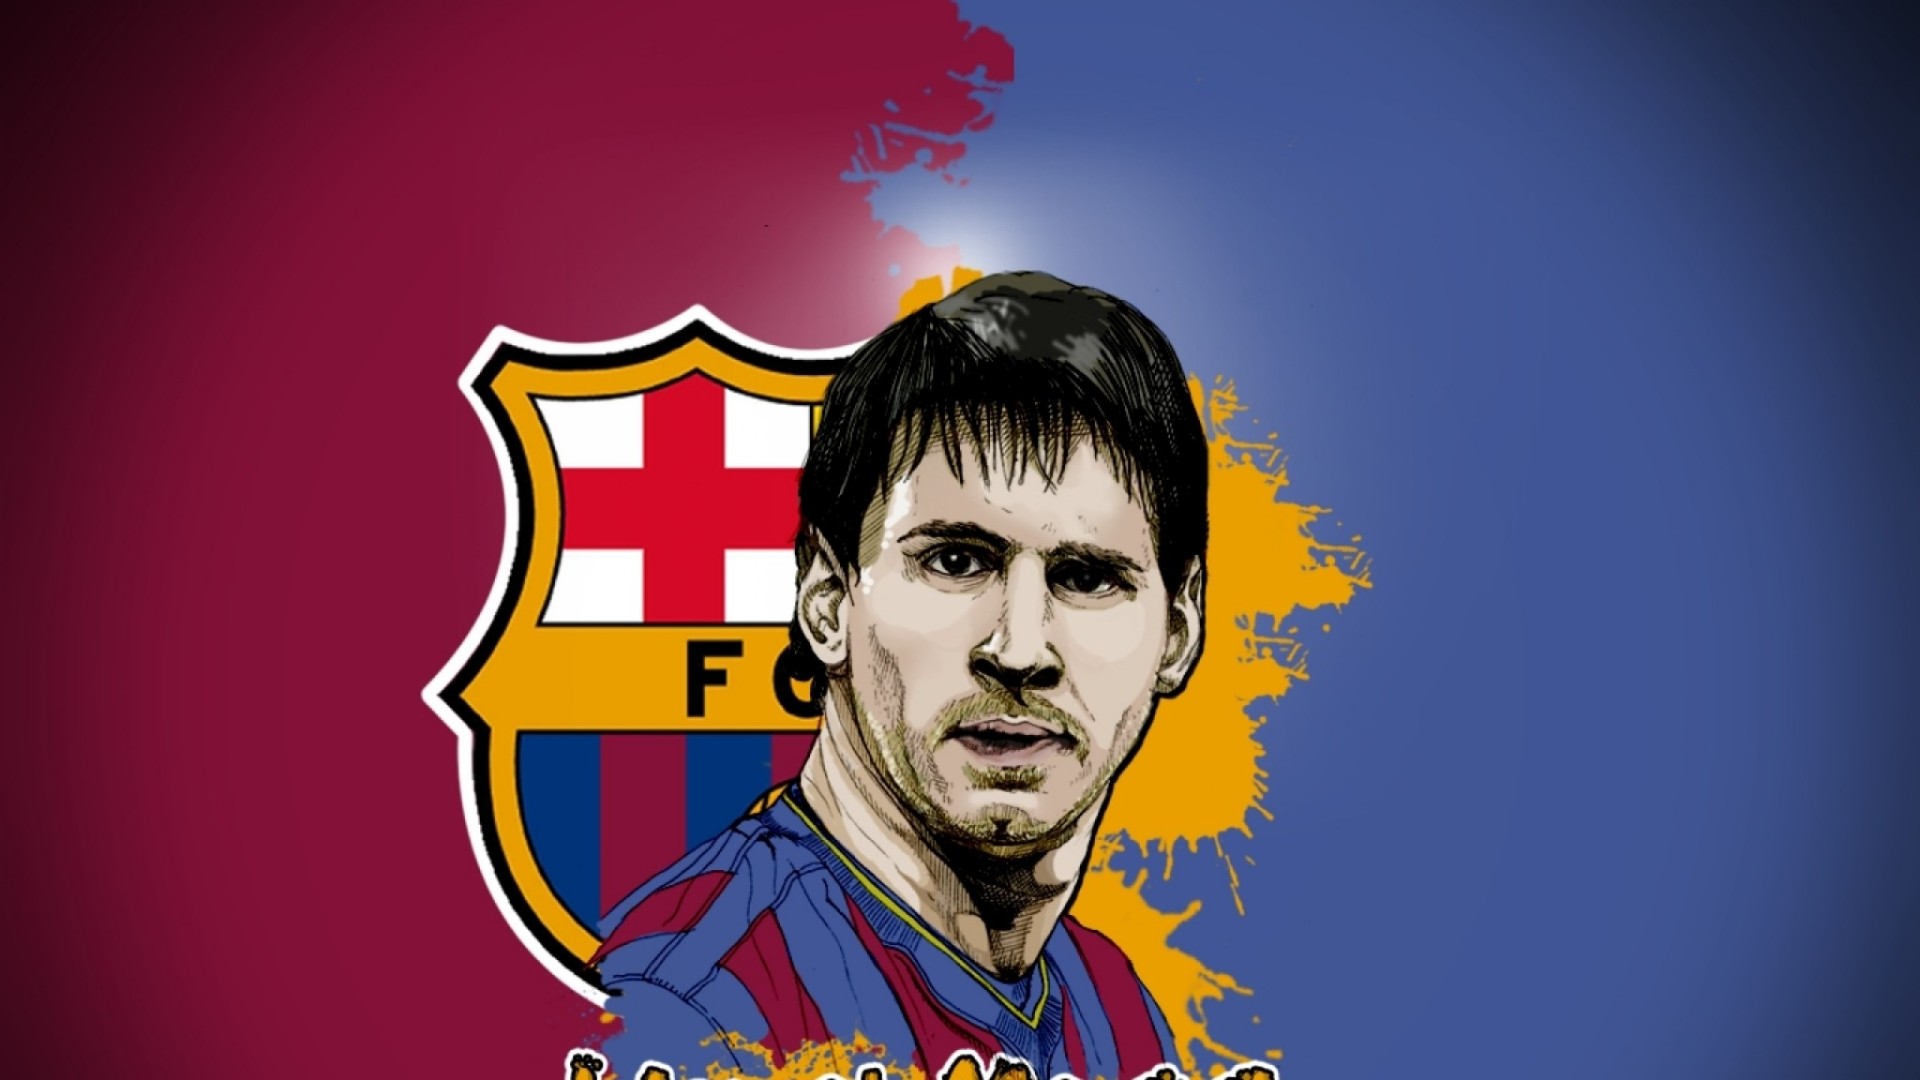 47+] Messi HD Wallpapers 1080p - WallpaperSafari